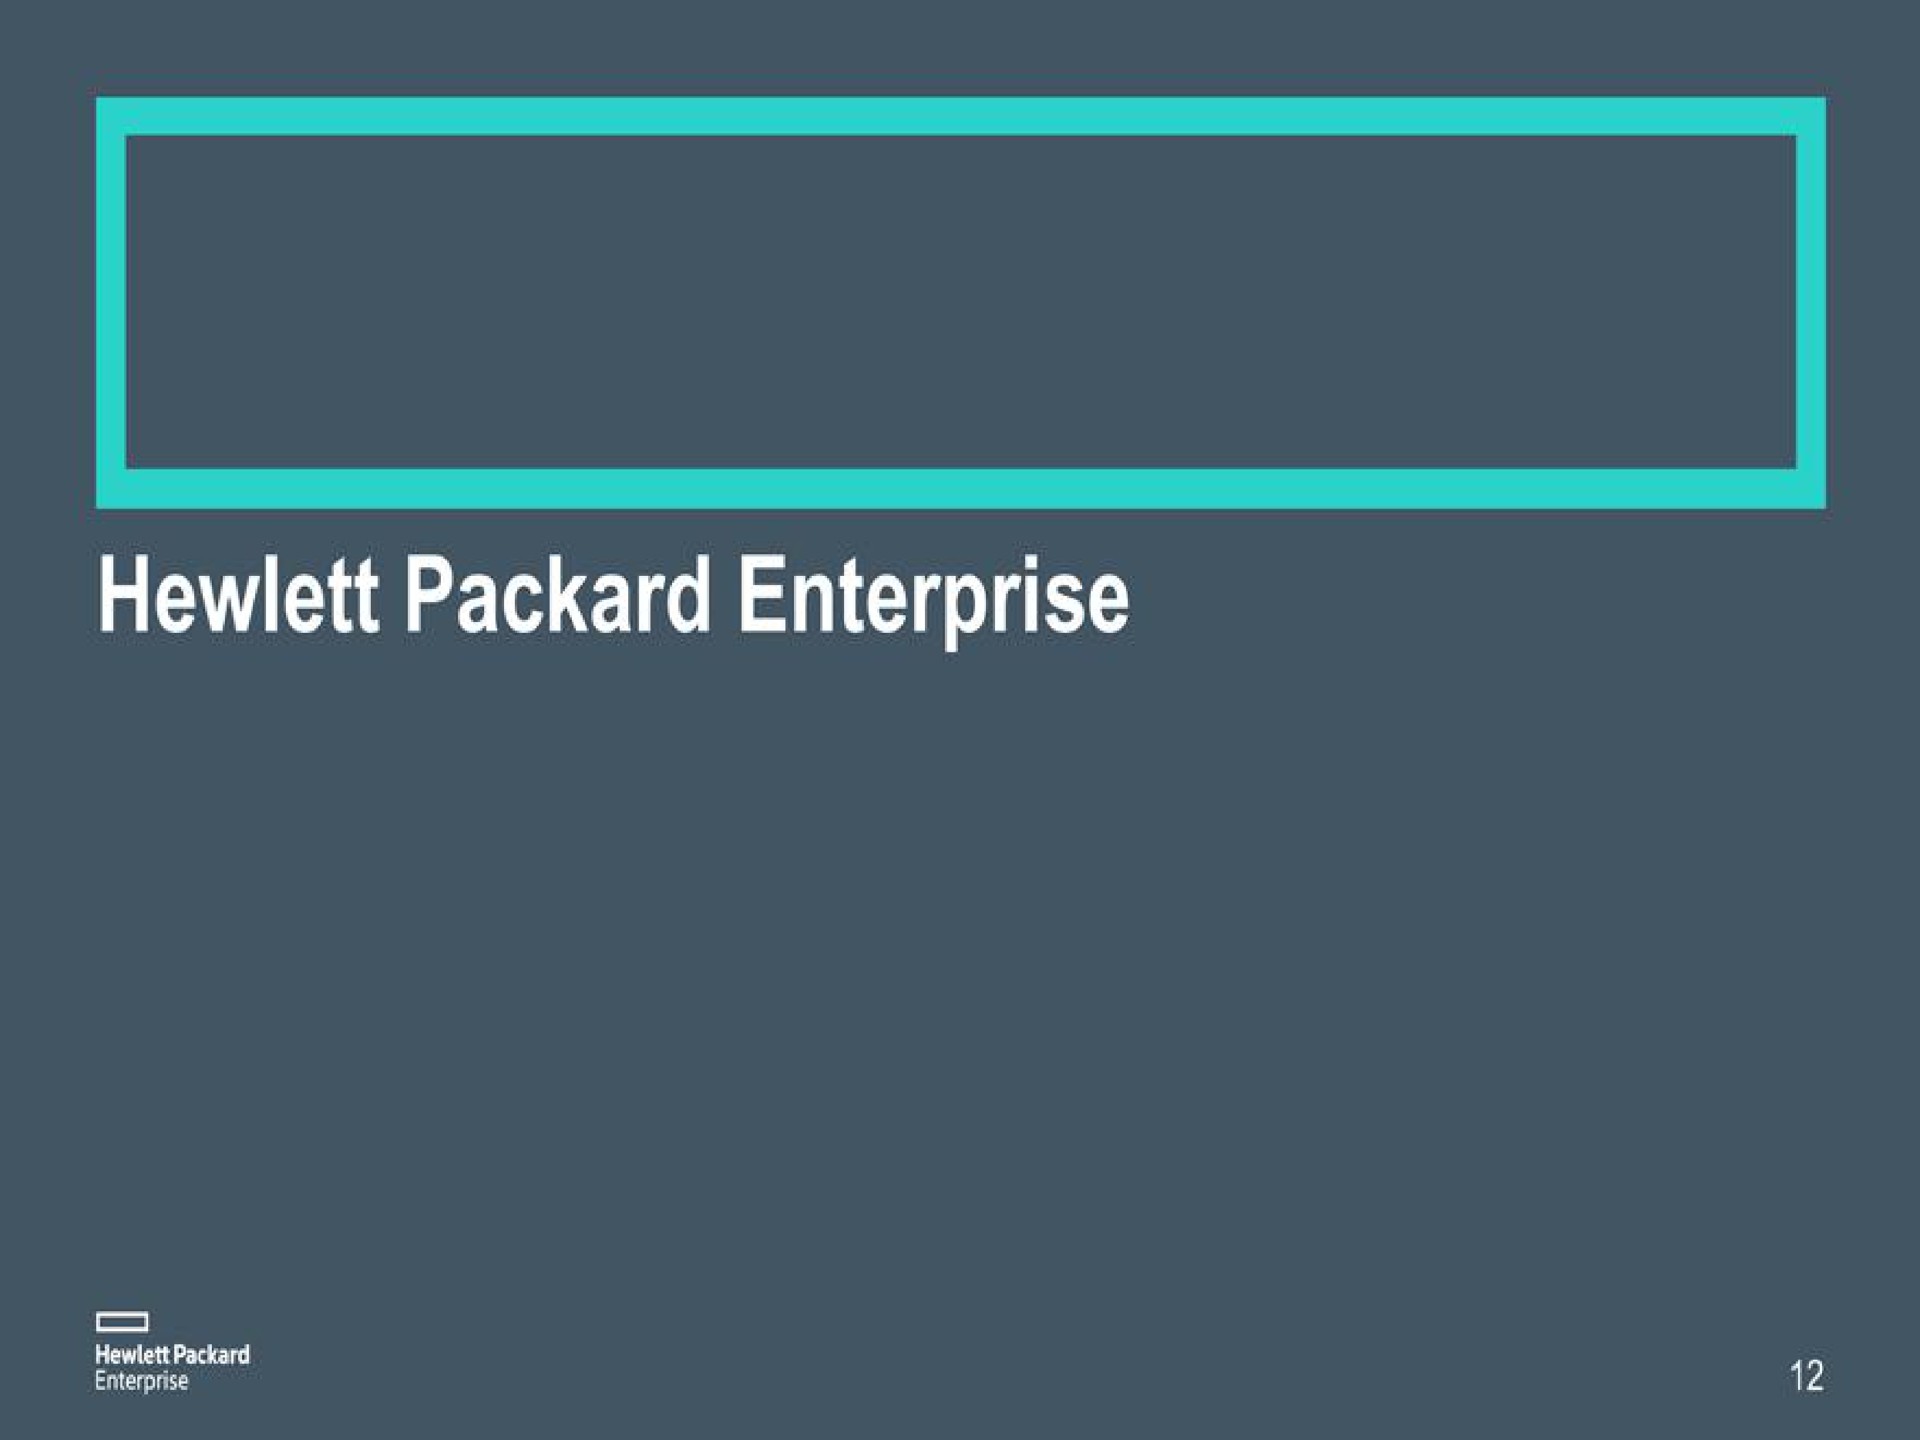 enterprise | Hewlett Packard Enterprise